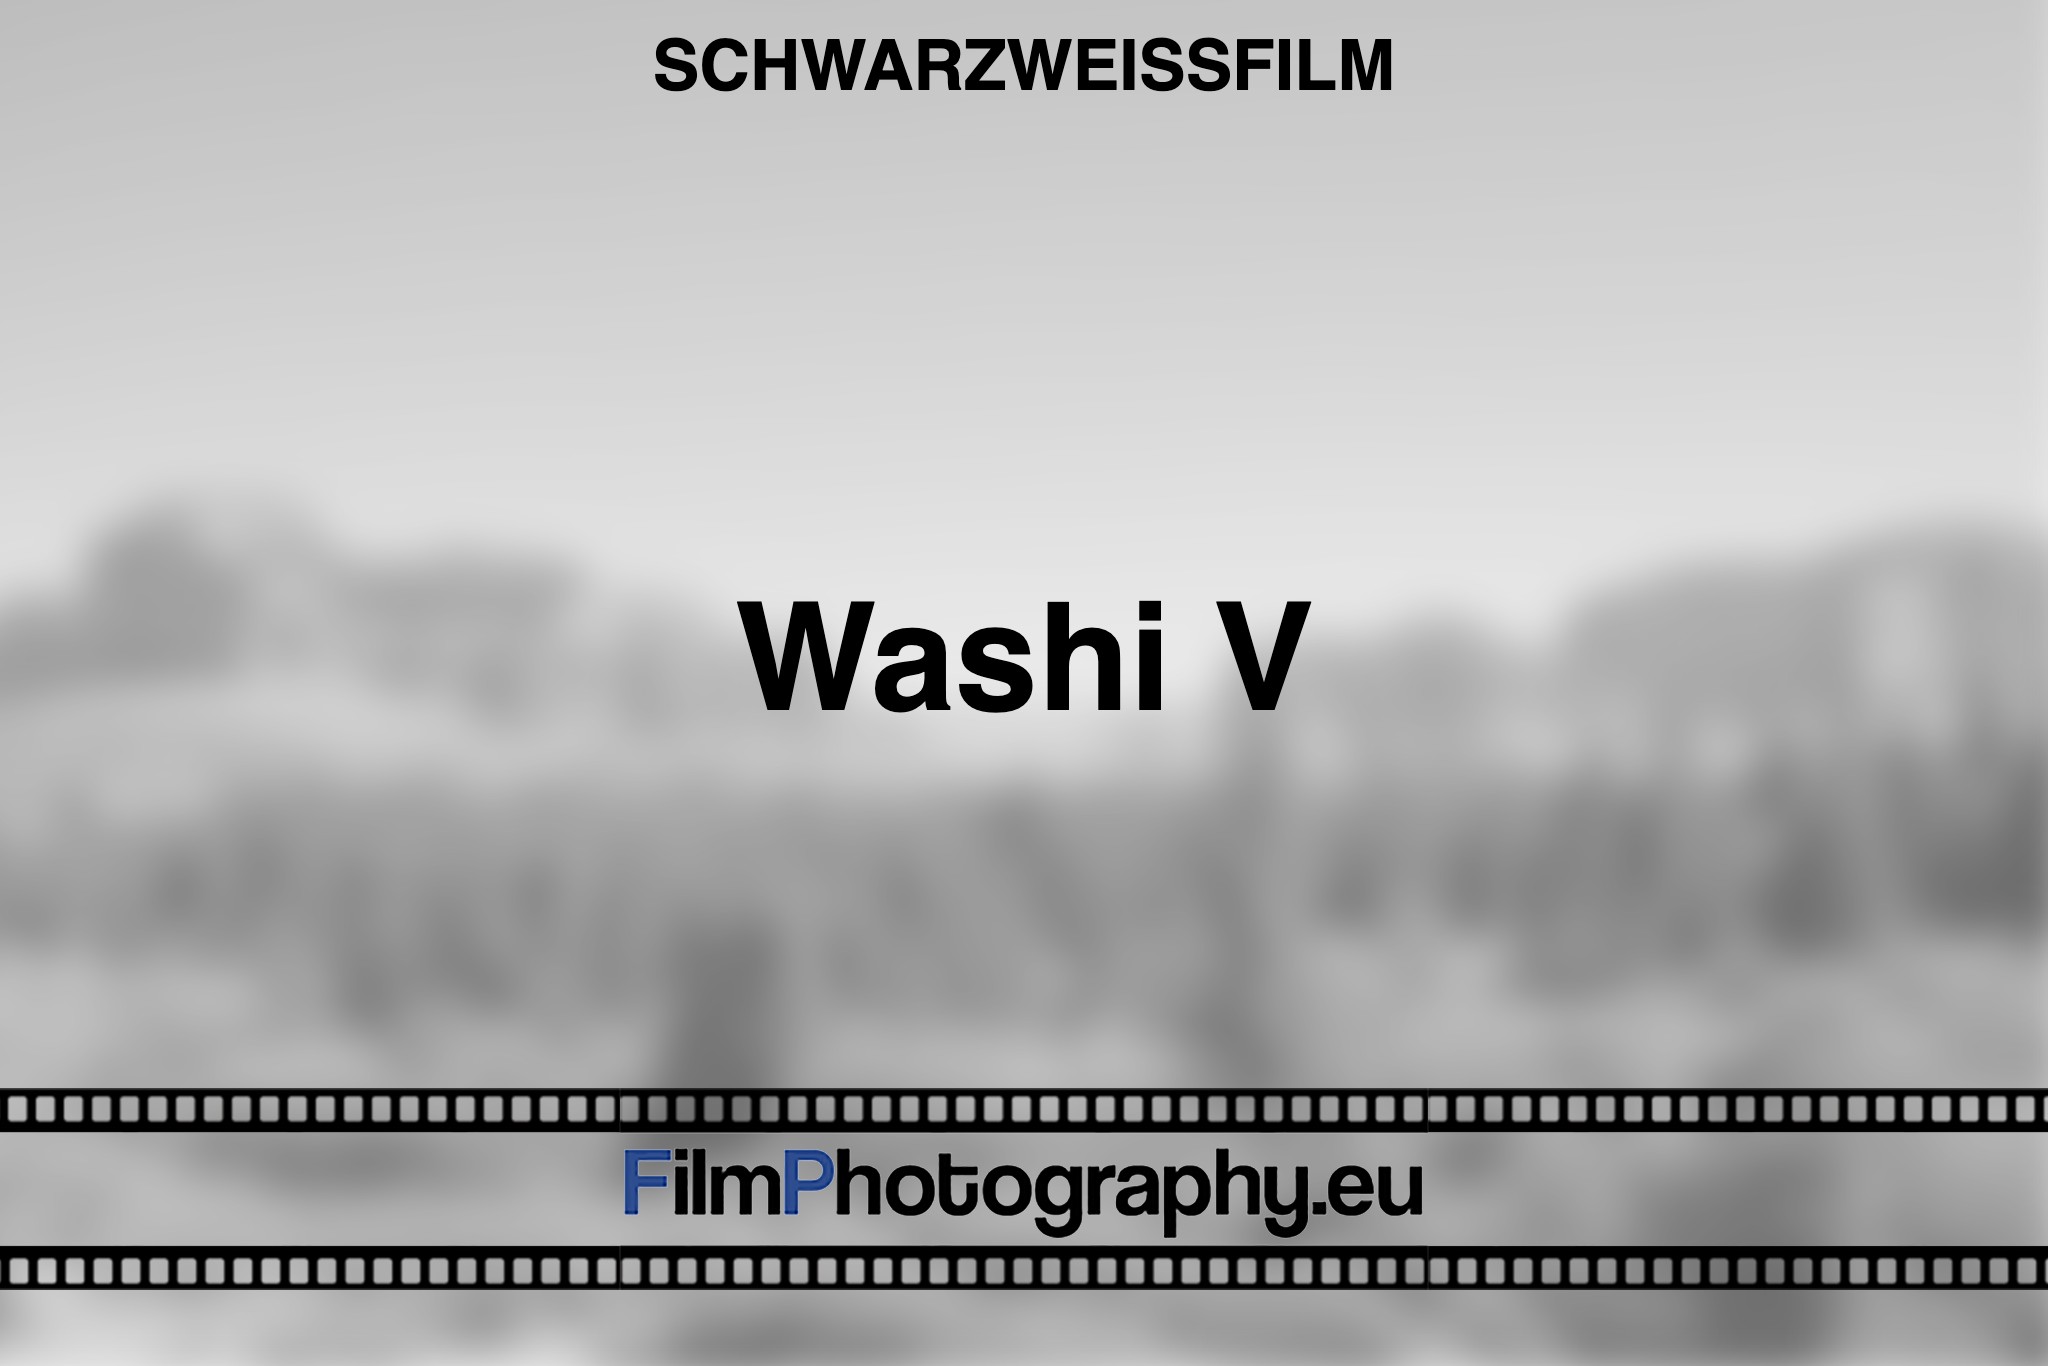 washi-v-schwarzweißfilm-bnv